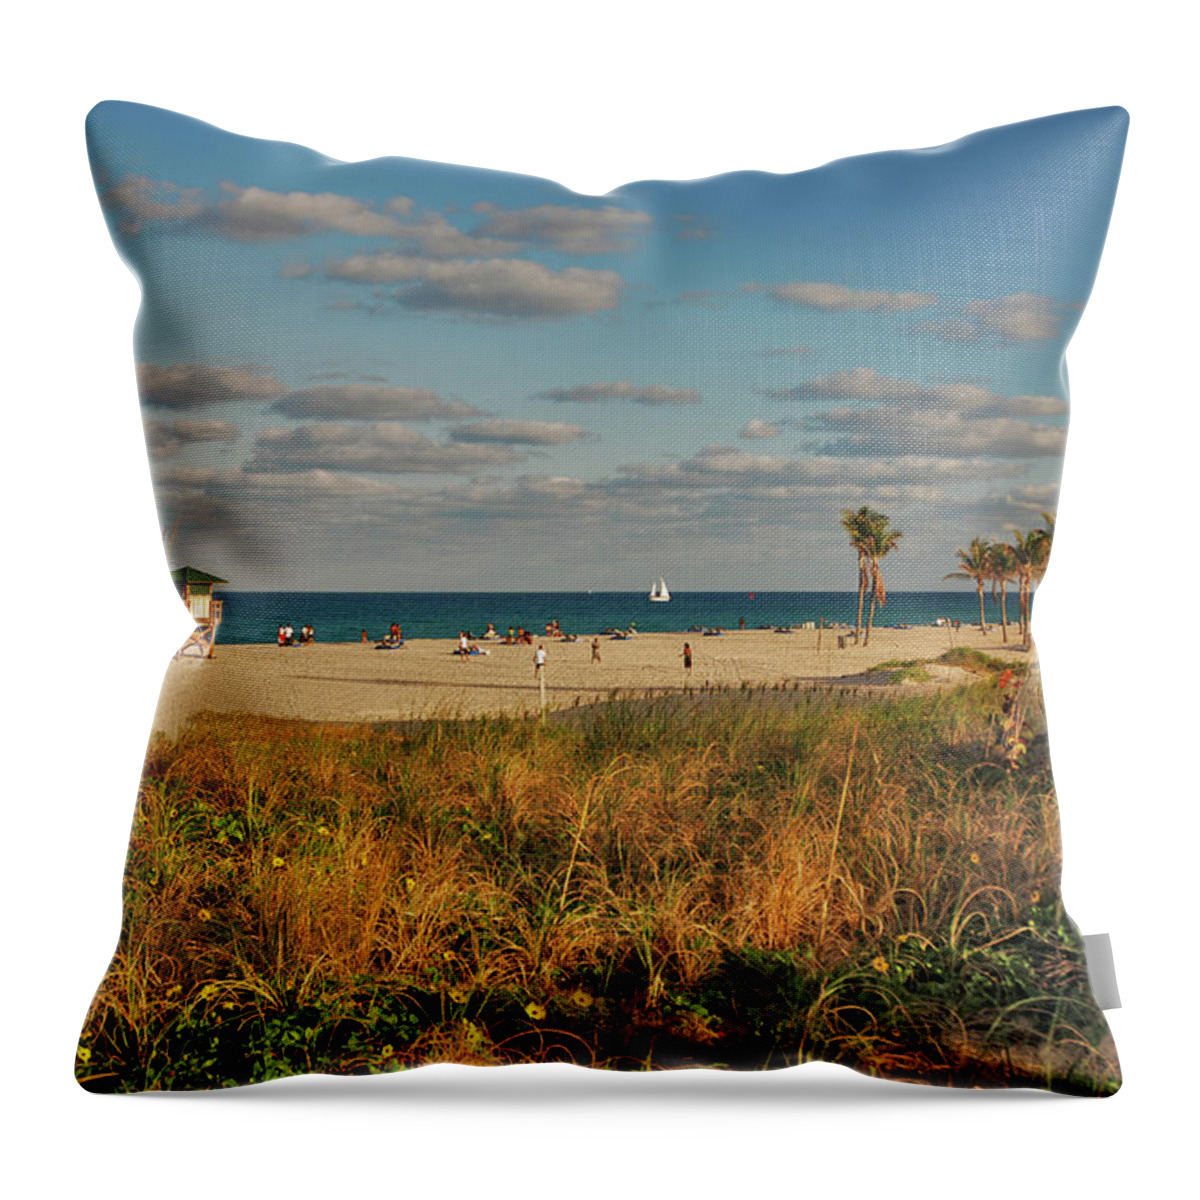 Beach Throw Pillow featuring the photograph 22- Beach by Joseph Keane